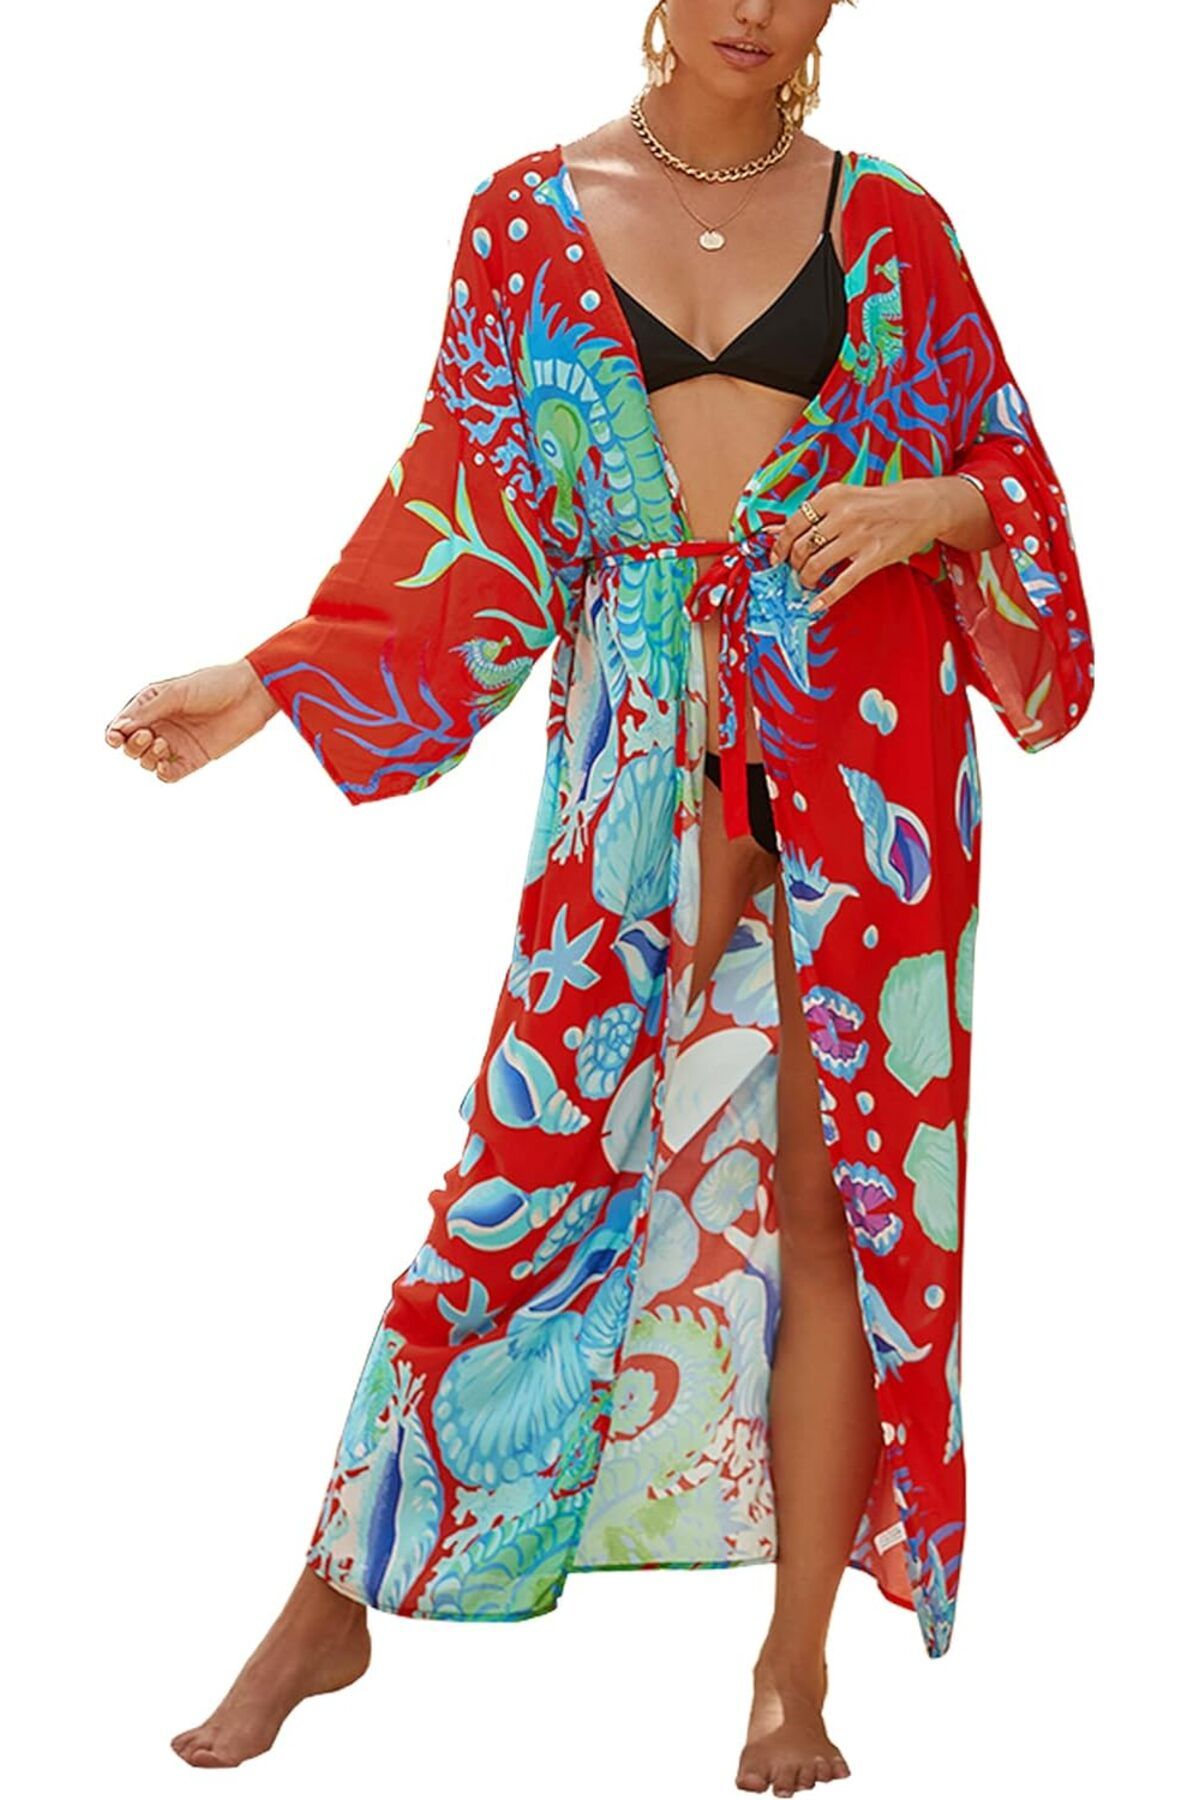 JDiction Kadın Mayo Örtüsü, Kimono, Uzun Plaj Elbisesi, Bikini için Çiçekli Dantel, Plaj Giyim